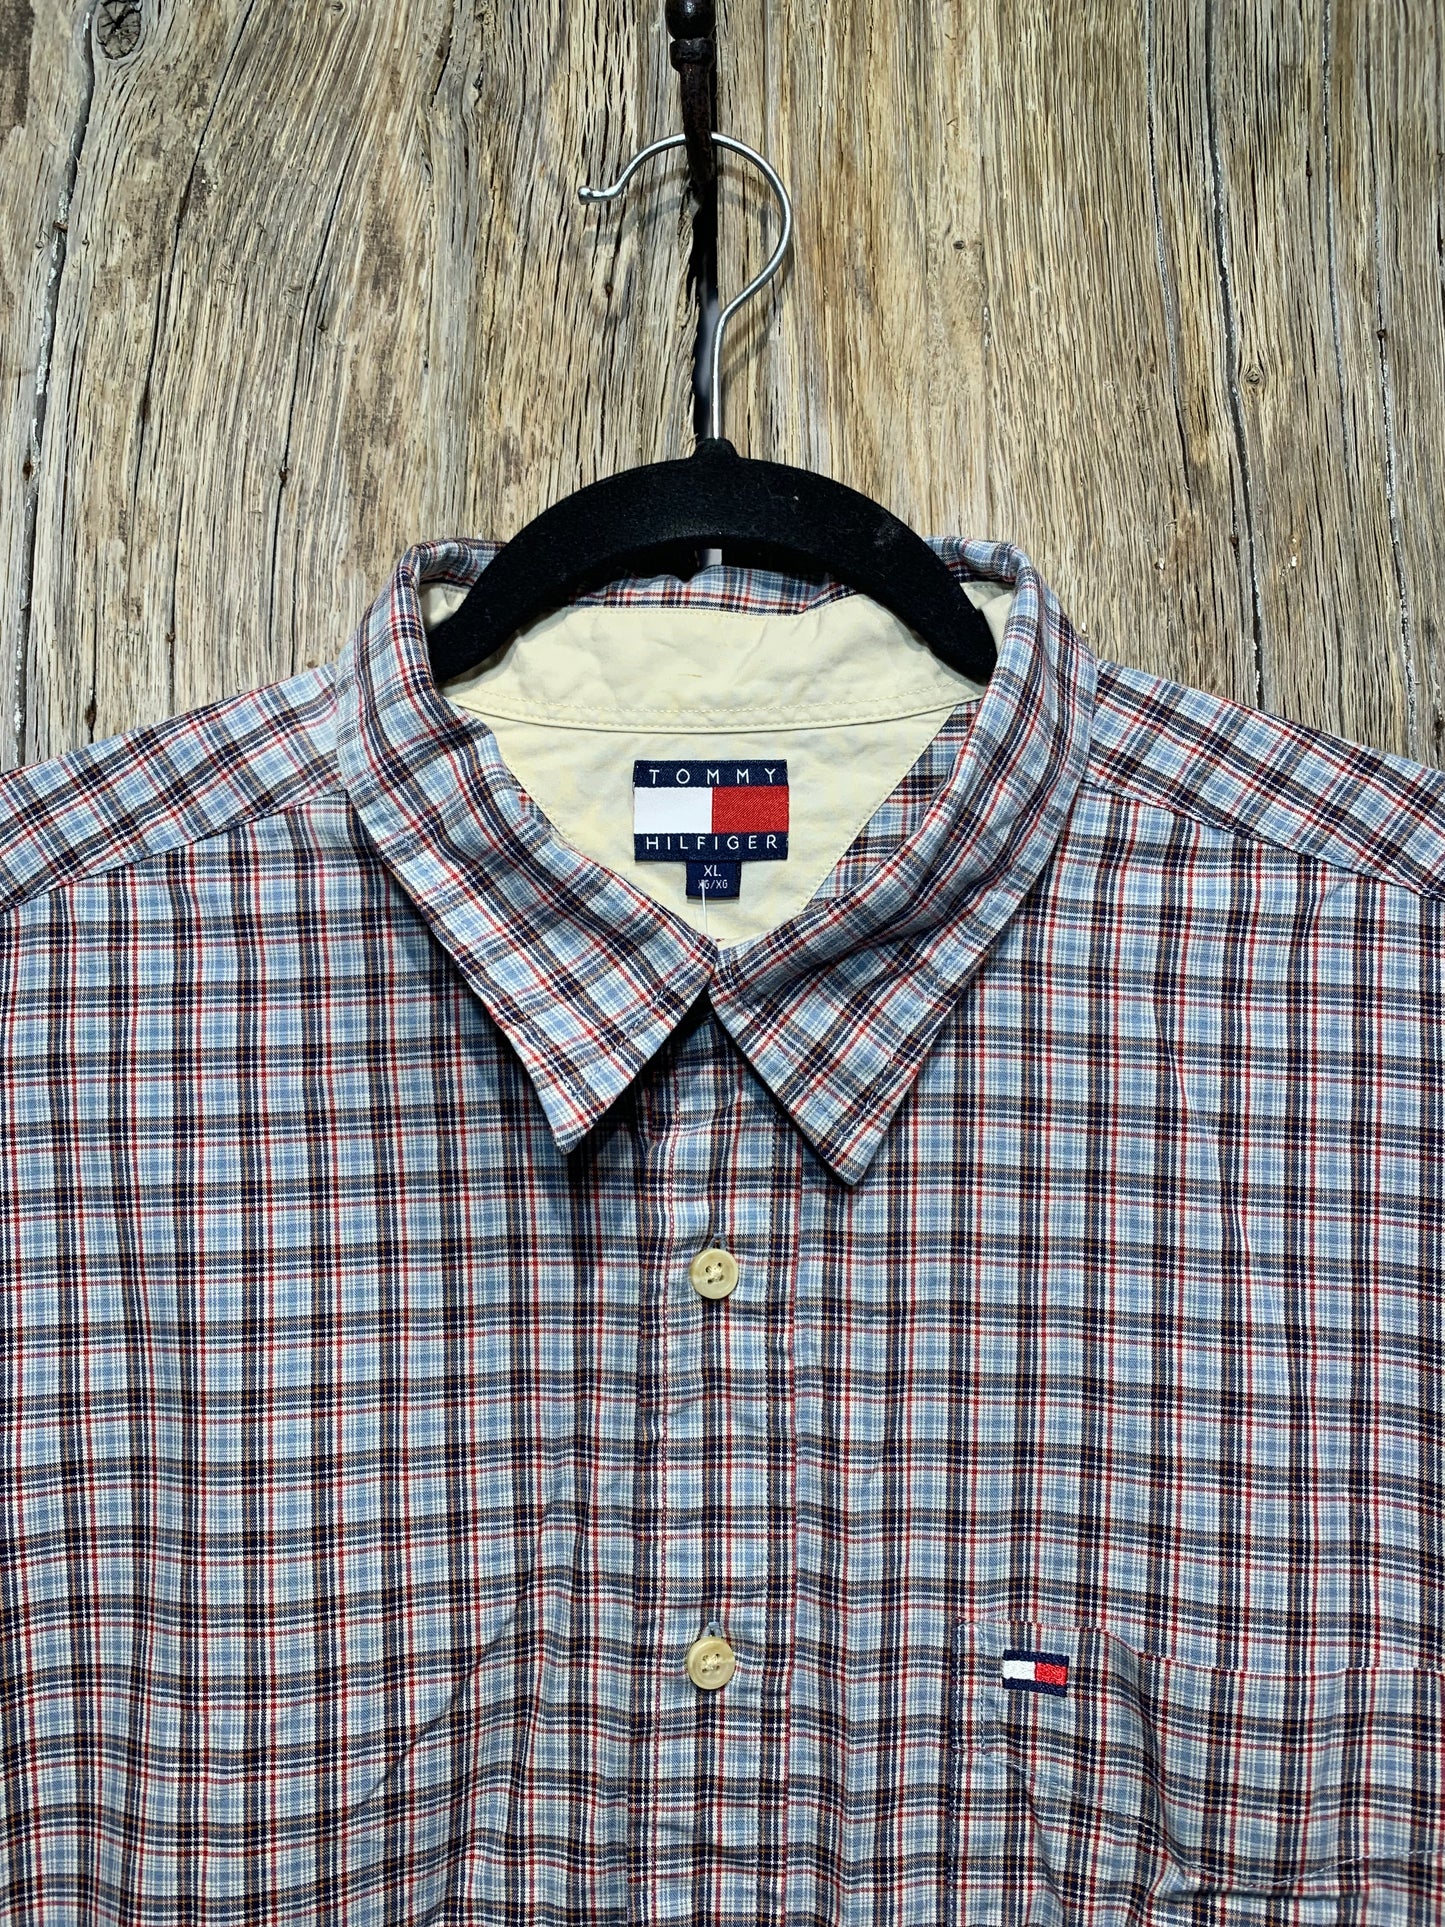 Tommy Hilfiger Vintage Check Shirt